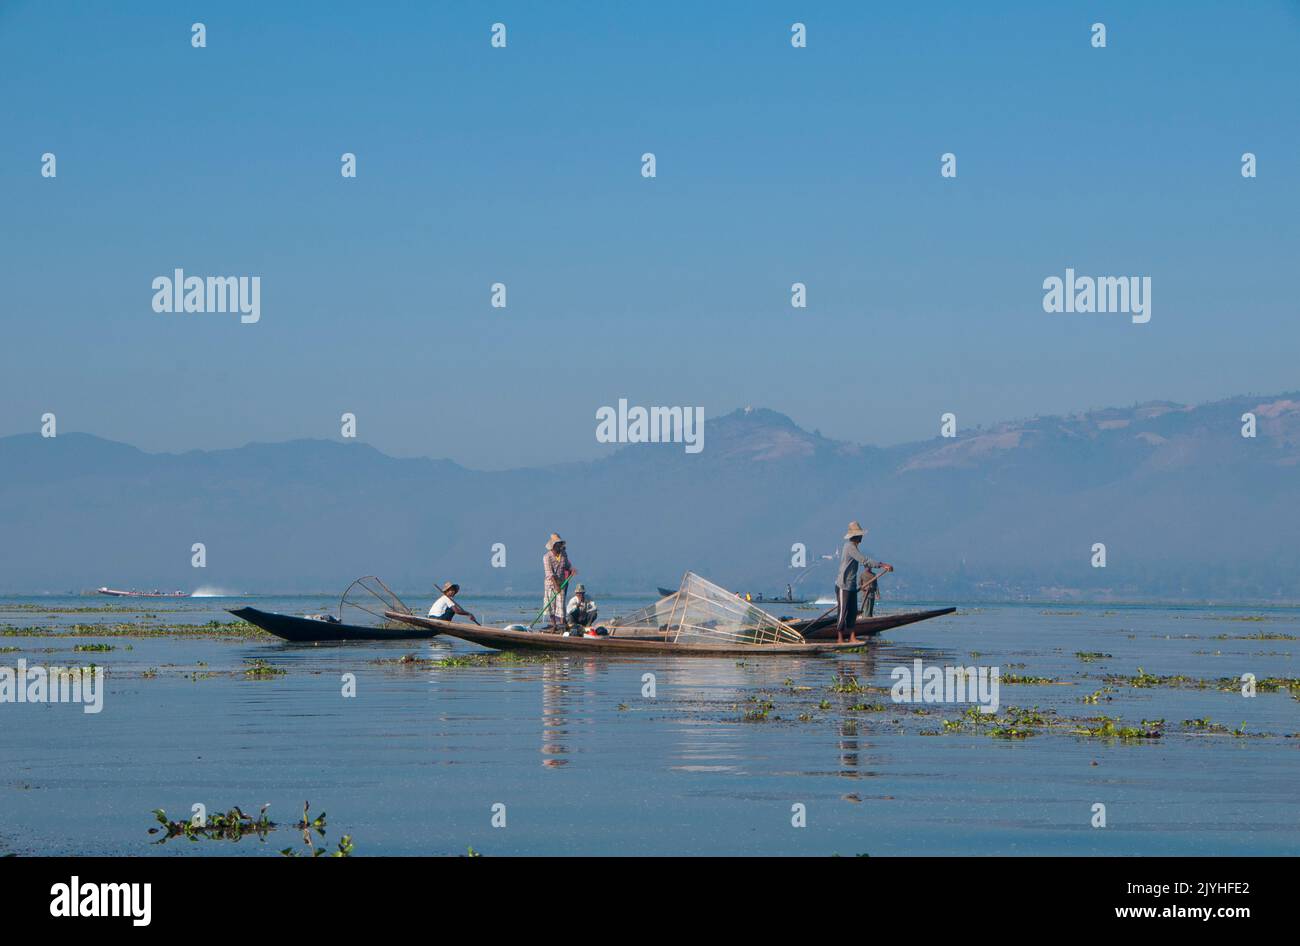 Birmania / Myanmar: Pescatori di Intha che canottano le gambe sul lago Inle, Stato di Shan. Il lago Inle è un lago di acqua dolce situato nello Stato di Shan. È il secondo lago più grande del Myanmar e uno dei più alti ad un'altitudine di 2.900 piedi (880 m). Gli abitanti del Lago di Inle (chiamato Intha), circa 70.000 di loro, vivono in quattro città confinanti con il lago, in numerosi piccoli villaggi lungo le rive del lago e sul lago stesso. La popolazione è costituita prevalentemente da Intha, con un mix di altri Shan, Taungyo, Pa-o (Taungthu), Danu, Kayah, Etnie Danaw e Bamar. Foto Stock